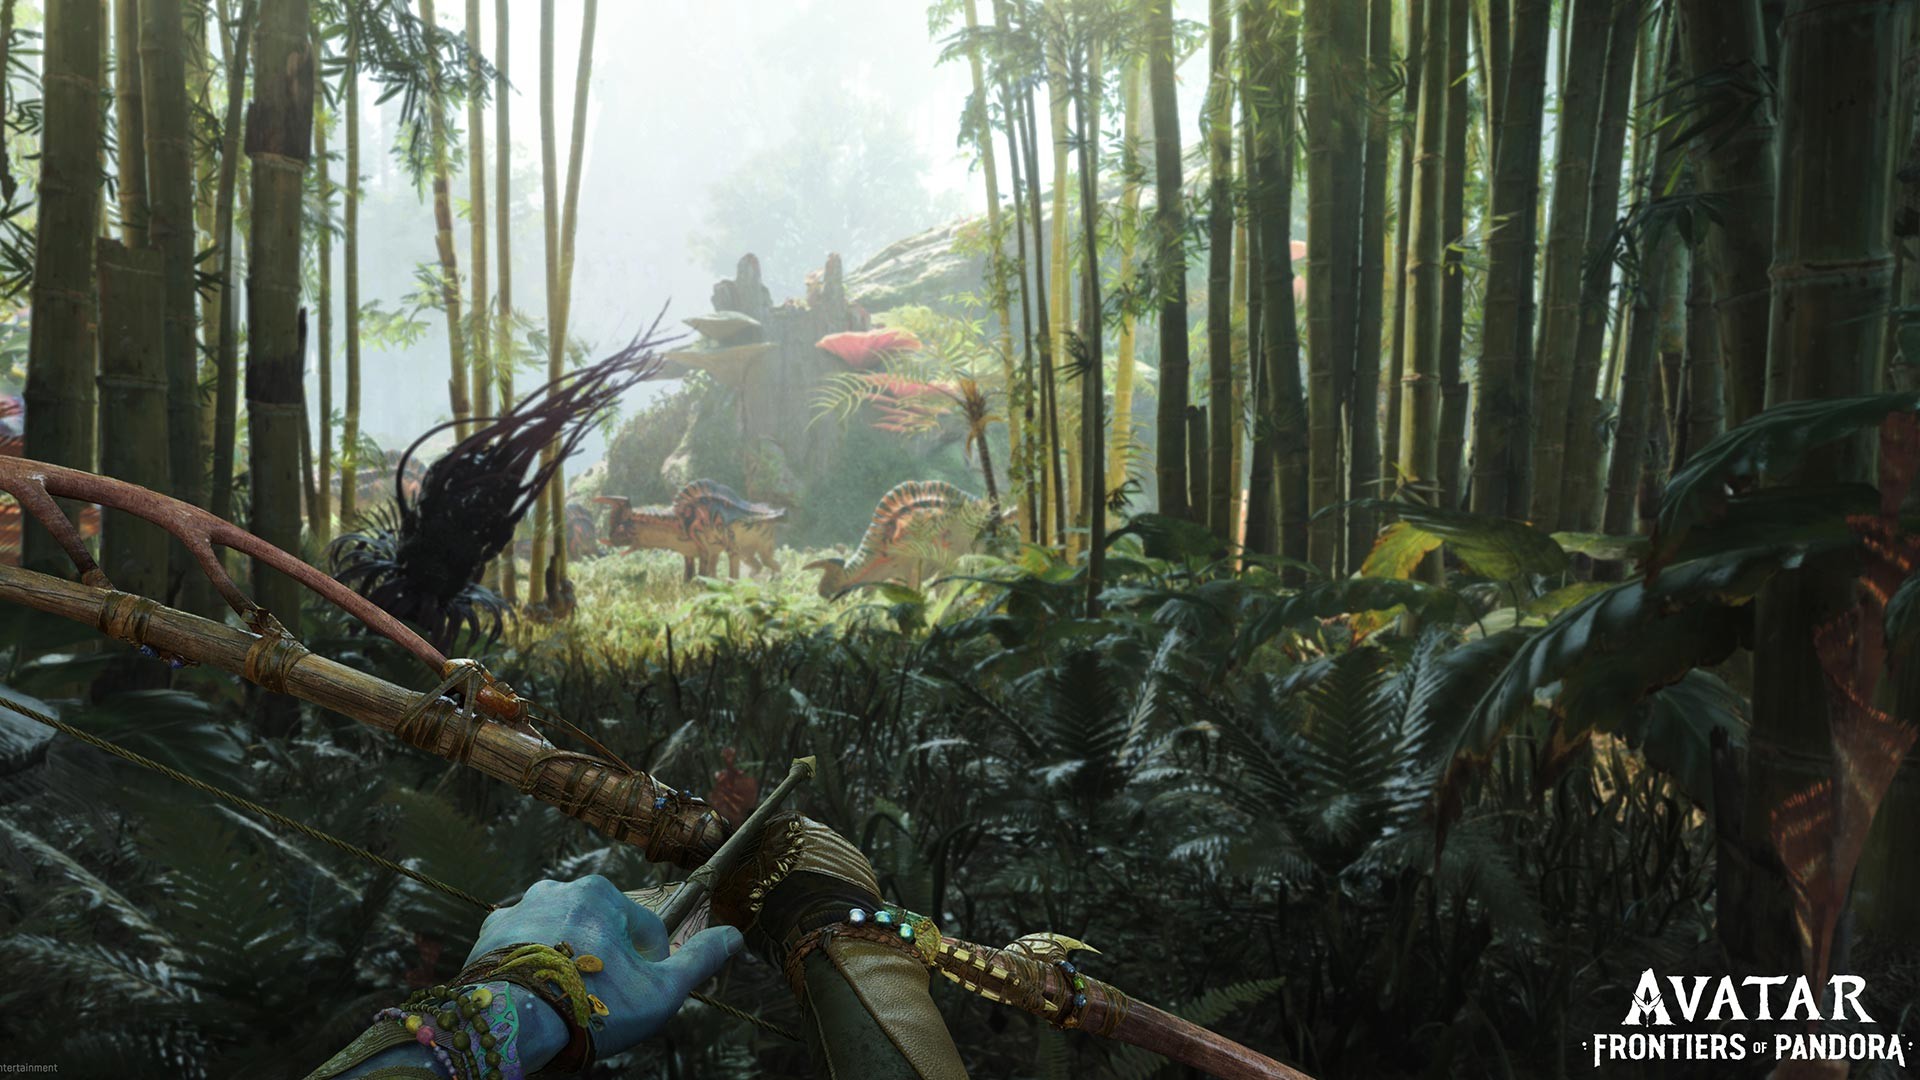 Hãy sẵn sàng khám phá thế giới mới của Avatar: Frontiers of Pandora game! Với đồ họa tuyệt đỉnh và lối chơi cực kỳ thú vị, game sẽ đưa bạn đến một thế giới hoàn toàn mới, nơi bạn có thể chiến đấu, khám phá và phát triển nhân vật của mình. Để có trải nghiệm tuyệt vời, hãy chạy sát với hệ thống yêu cầu cấu hình đề xuất và tận hưởng màn chơi hoành tráng này!